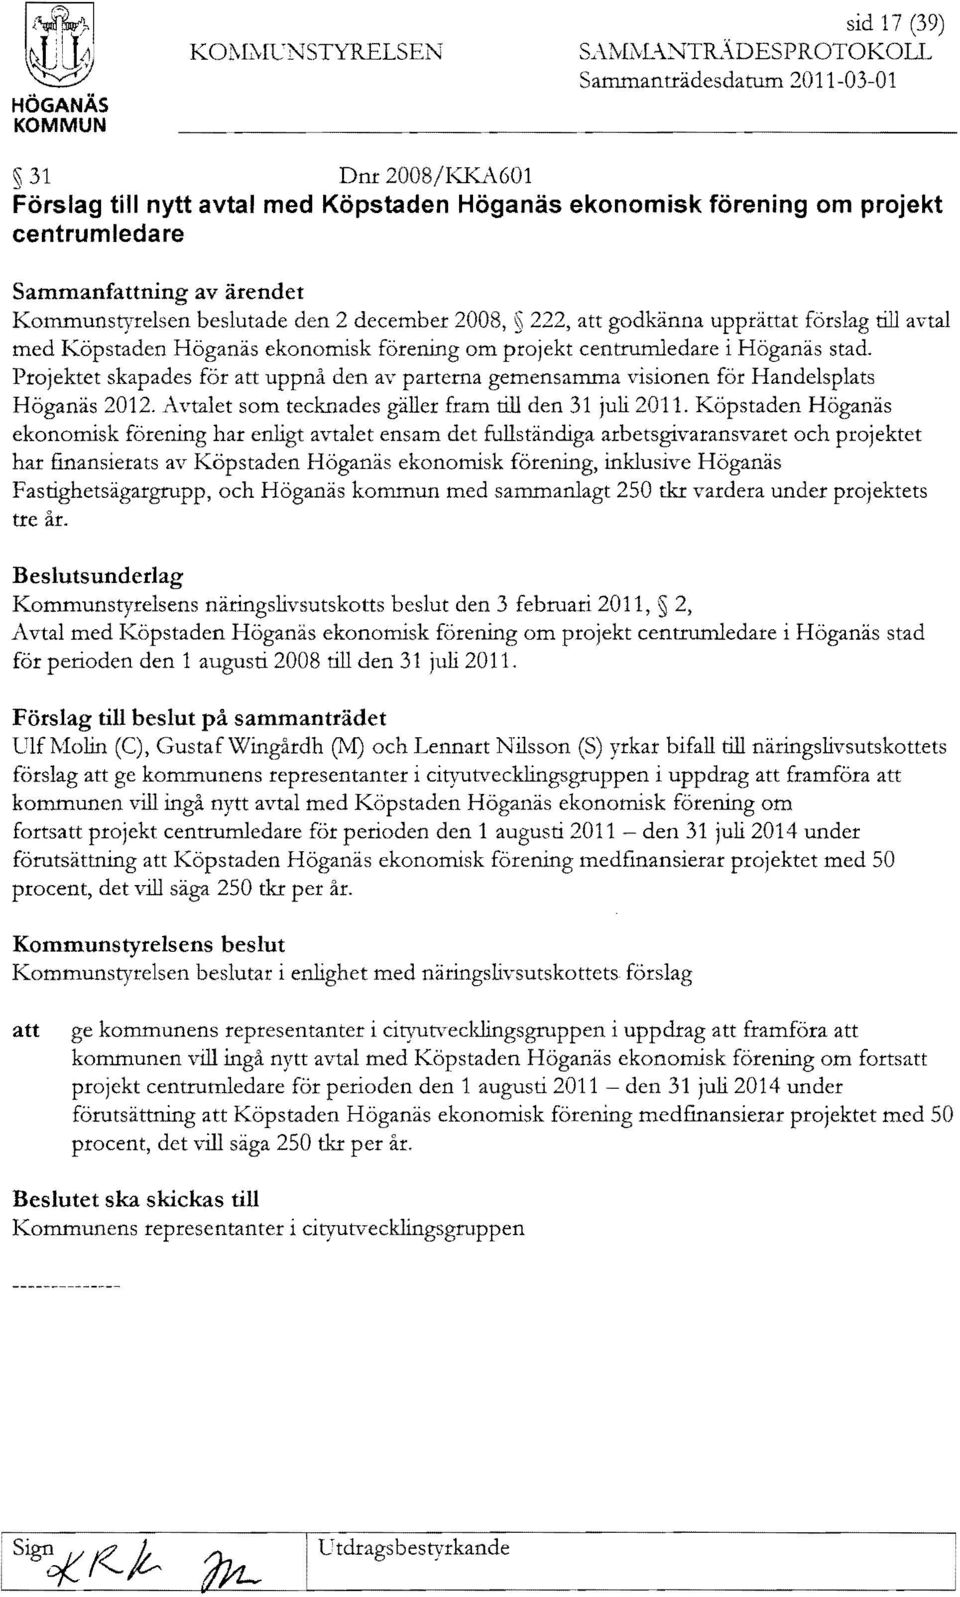 beslutade 2 december 2008, 222, godkänna upprättat förslag till avtal med Köpstaden Höganäs ekonomisk förening om projekt centrumledare i Höganäs stad.